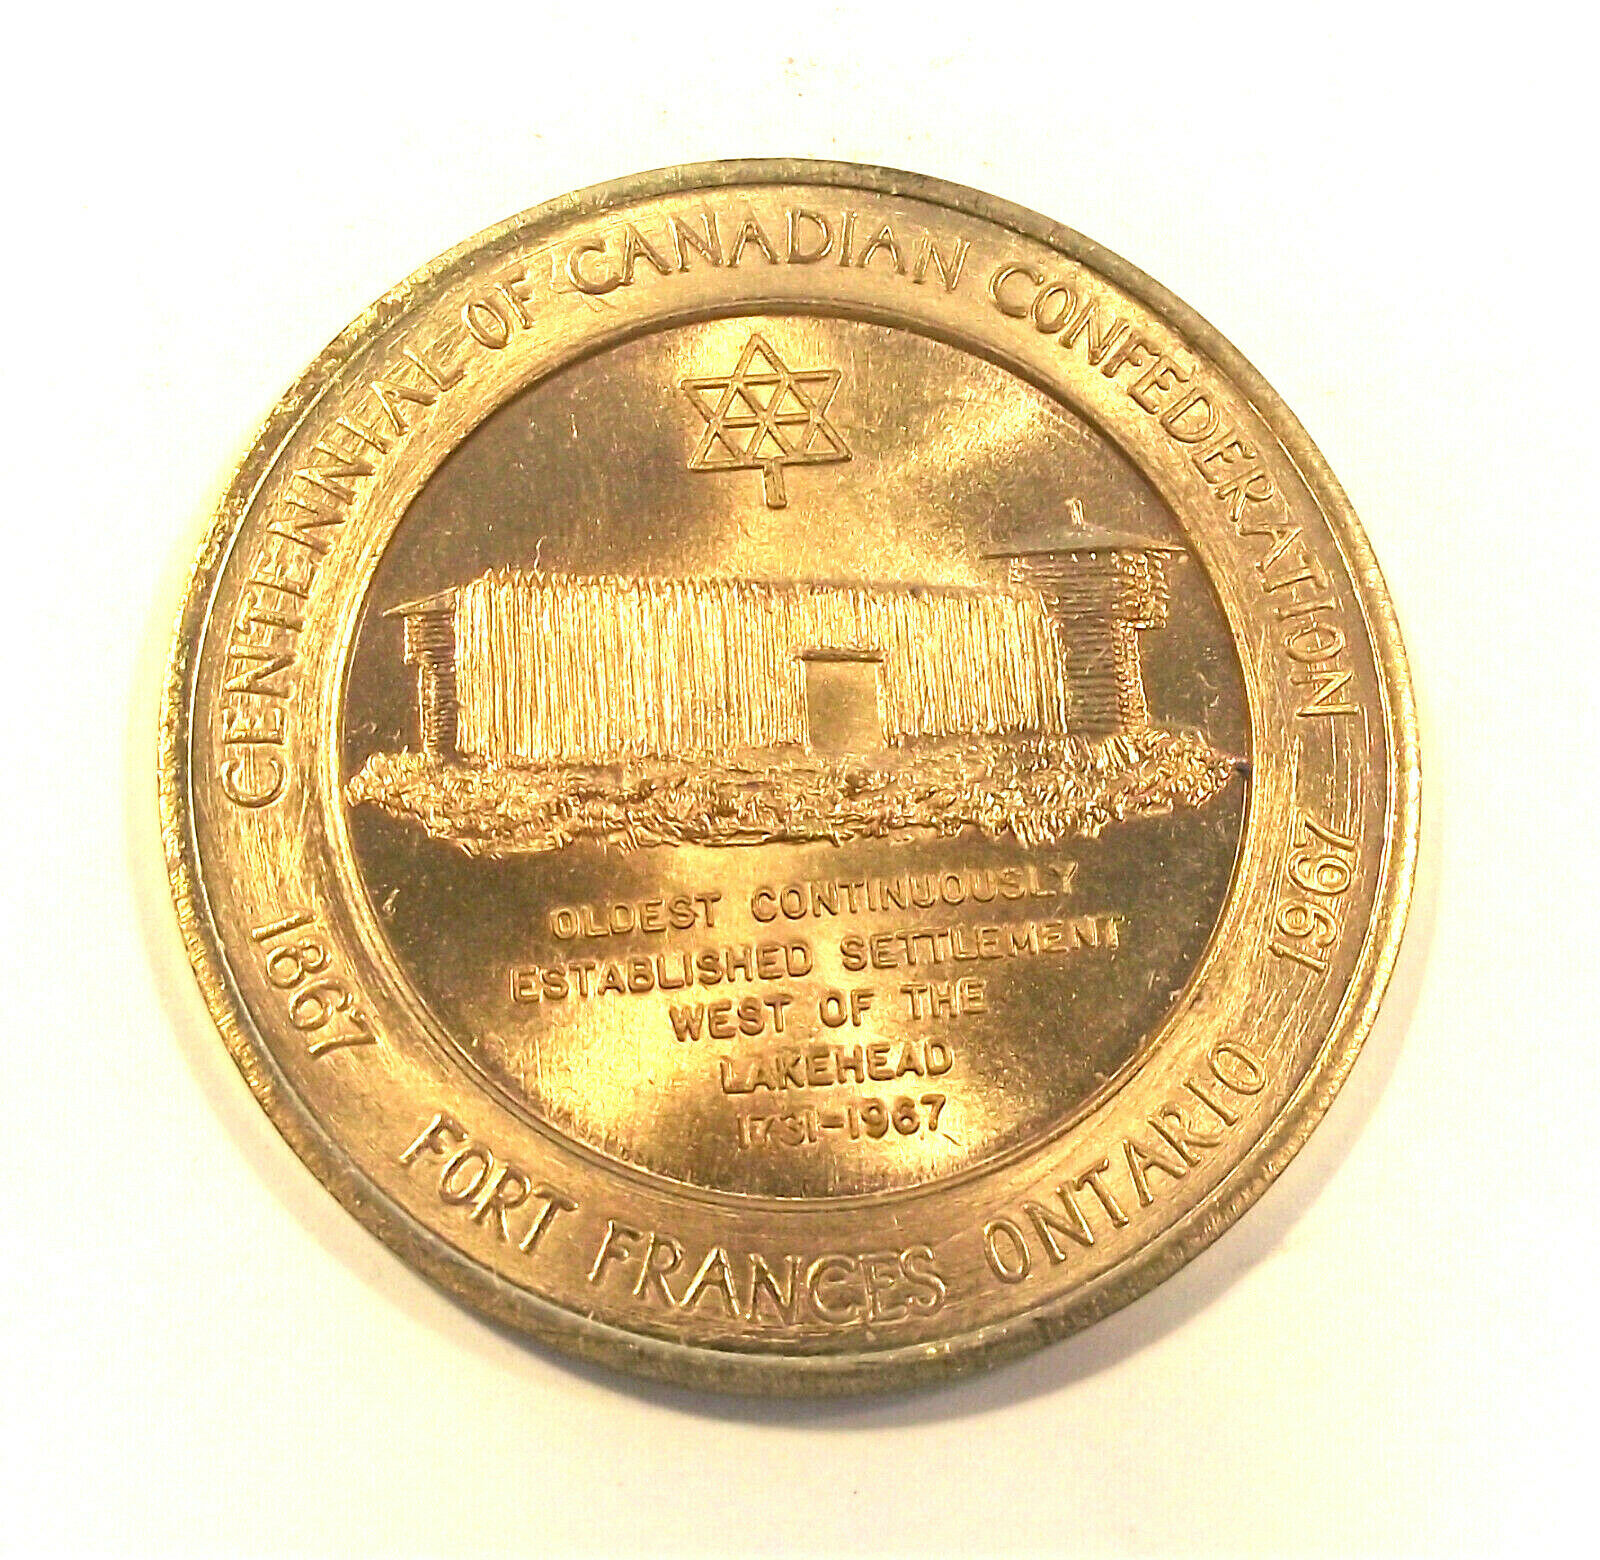 Fort Frances Ontario Canada 1867-1967 Centennial Trade Dollar Token (lot Ch08)